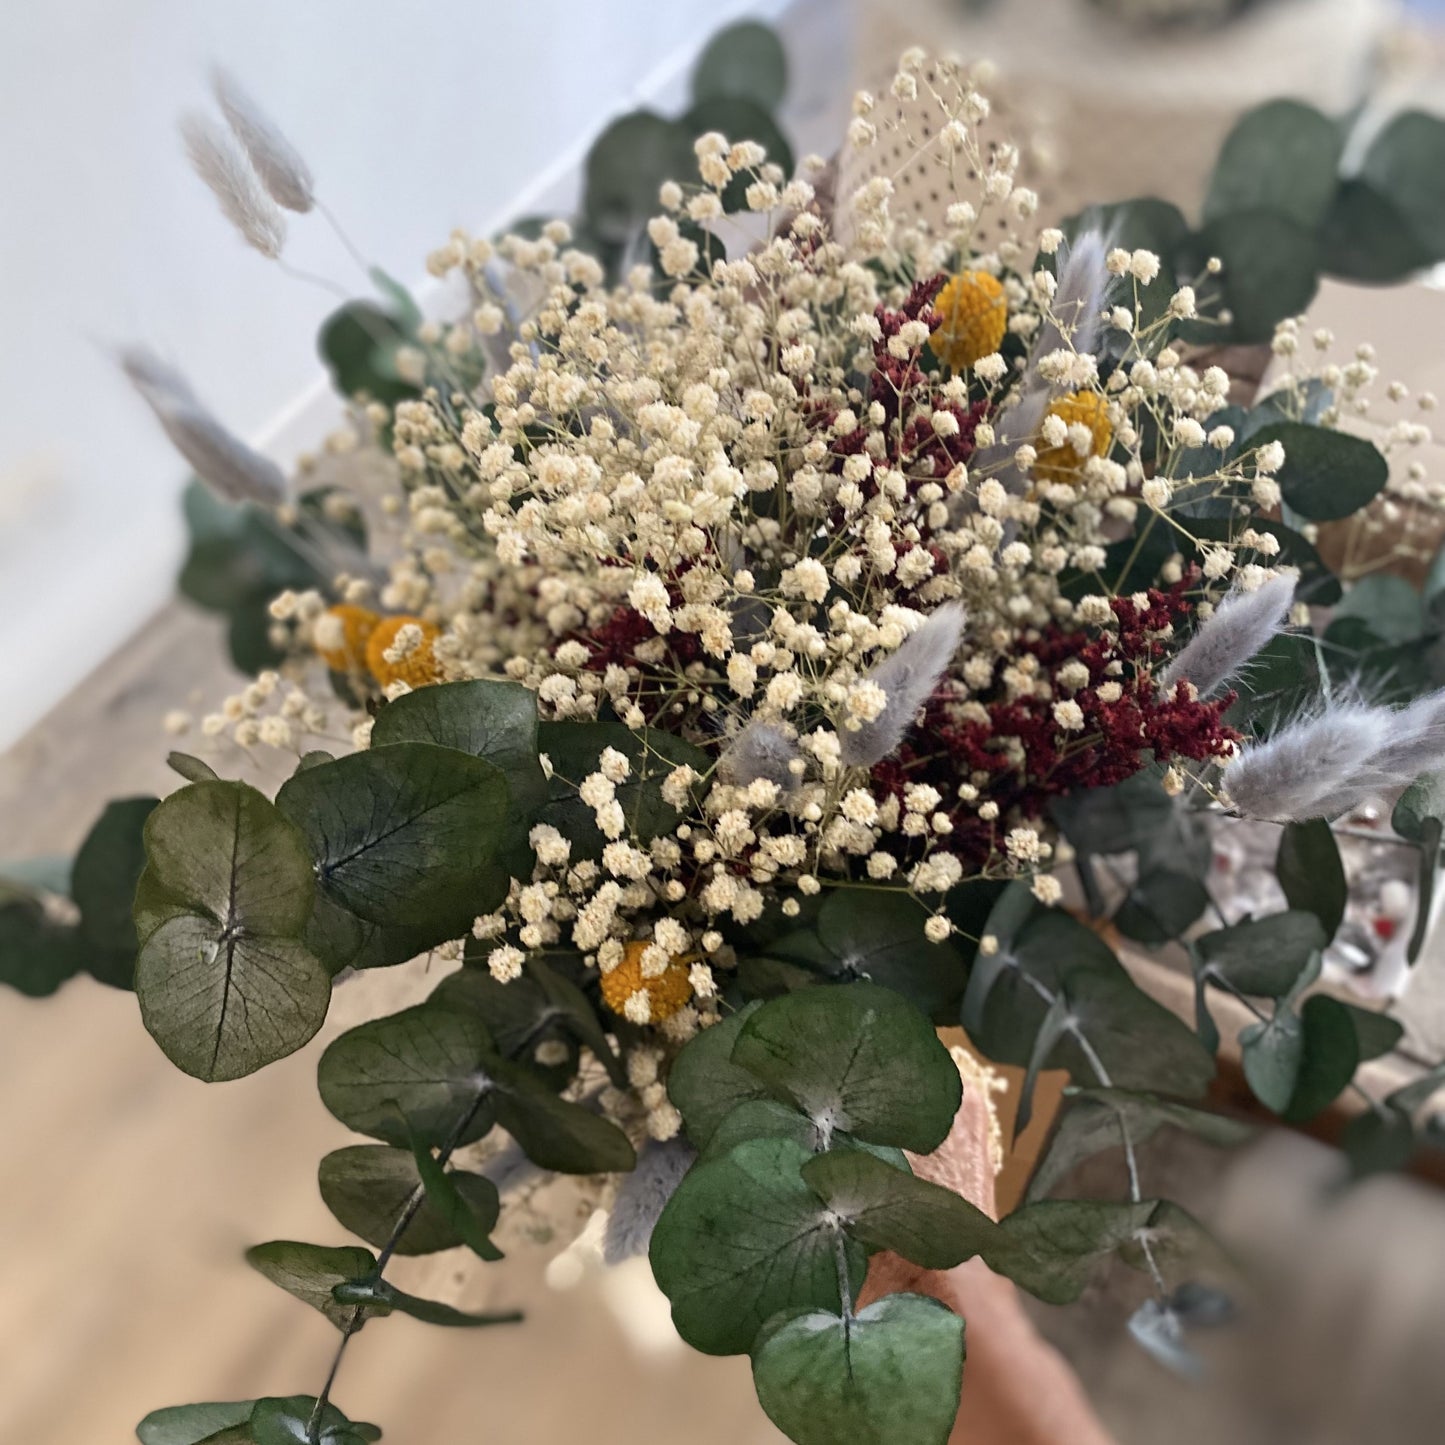 Autumn bridal bouquet